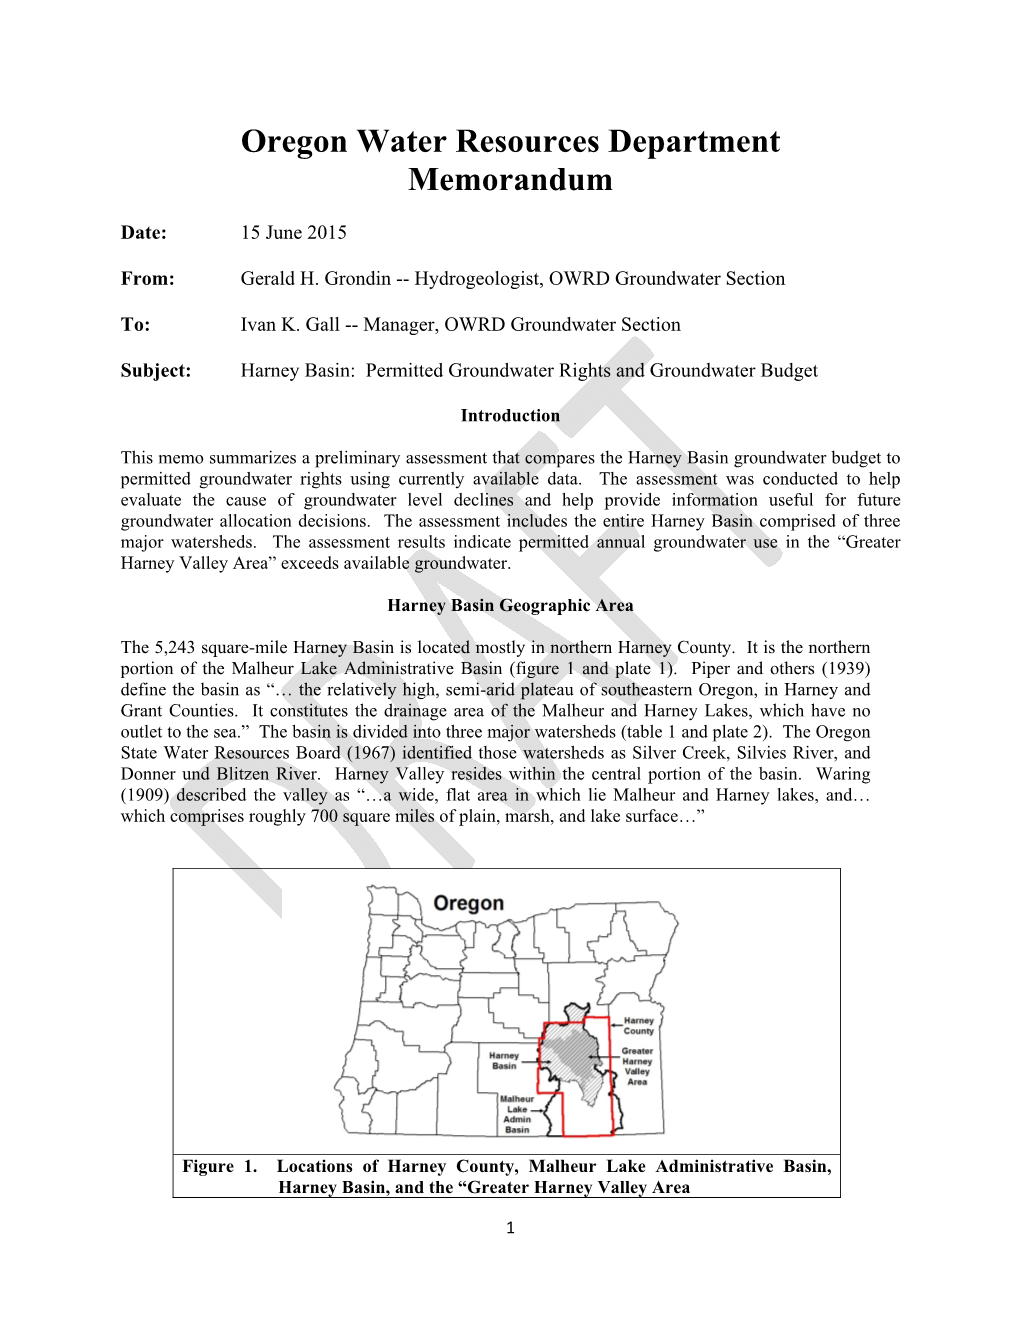 Oregon Water Resources Department Memorandum